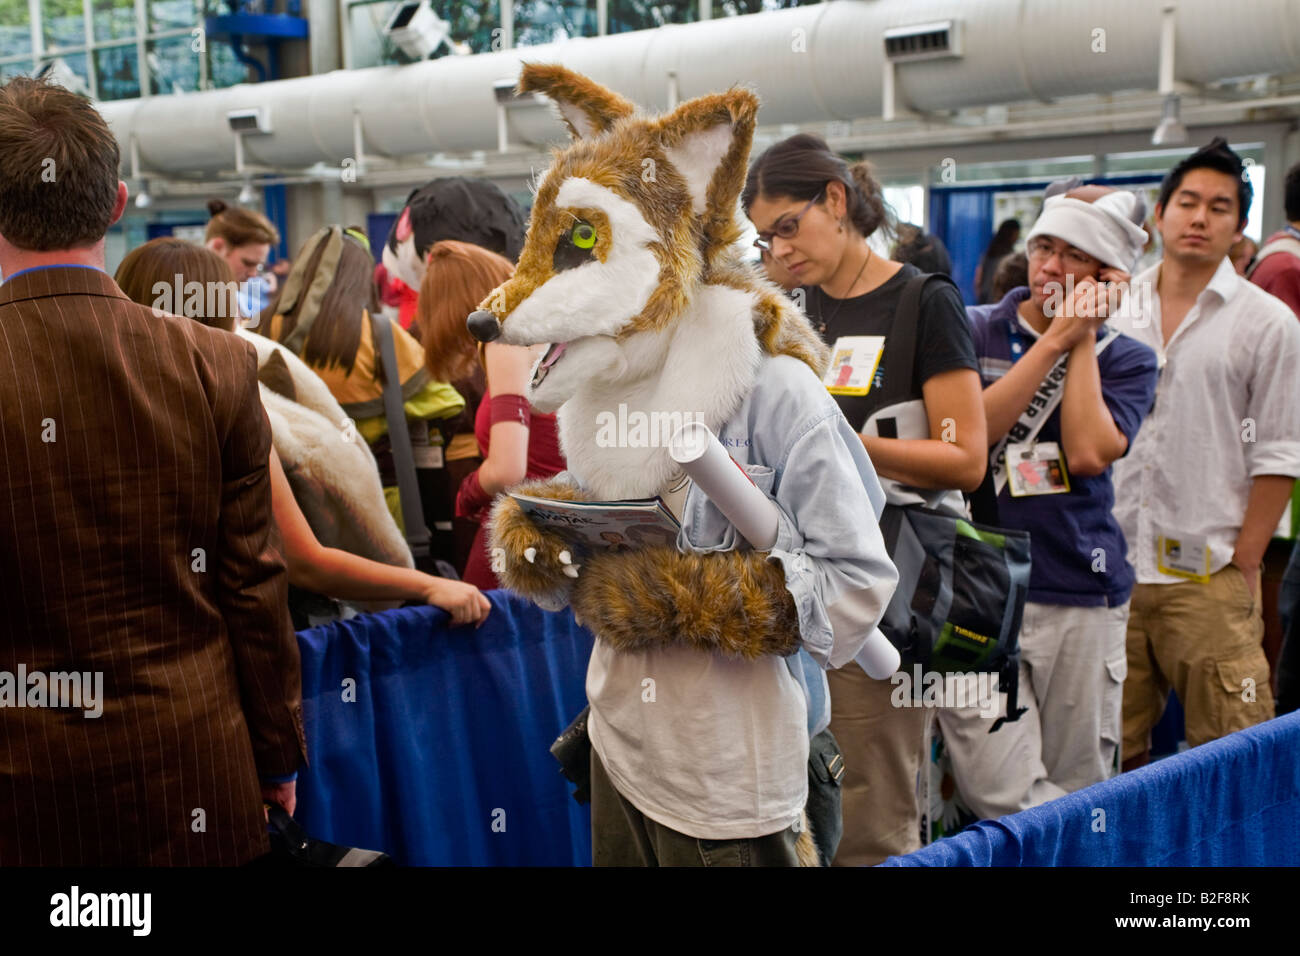 Tragen einen Fuchs Kopf zieht ein kostümierter Besucher auf Comic-Con International in San Diego Convention Center einen amüsierten Blick rechts Stockfoto